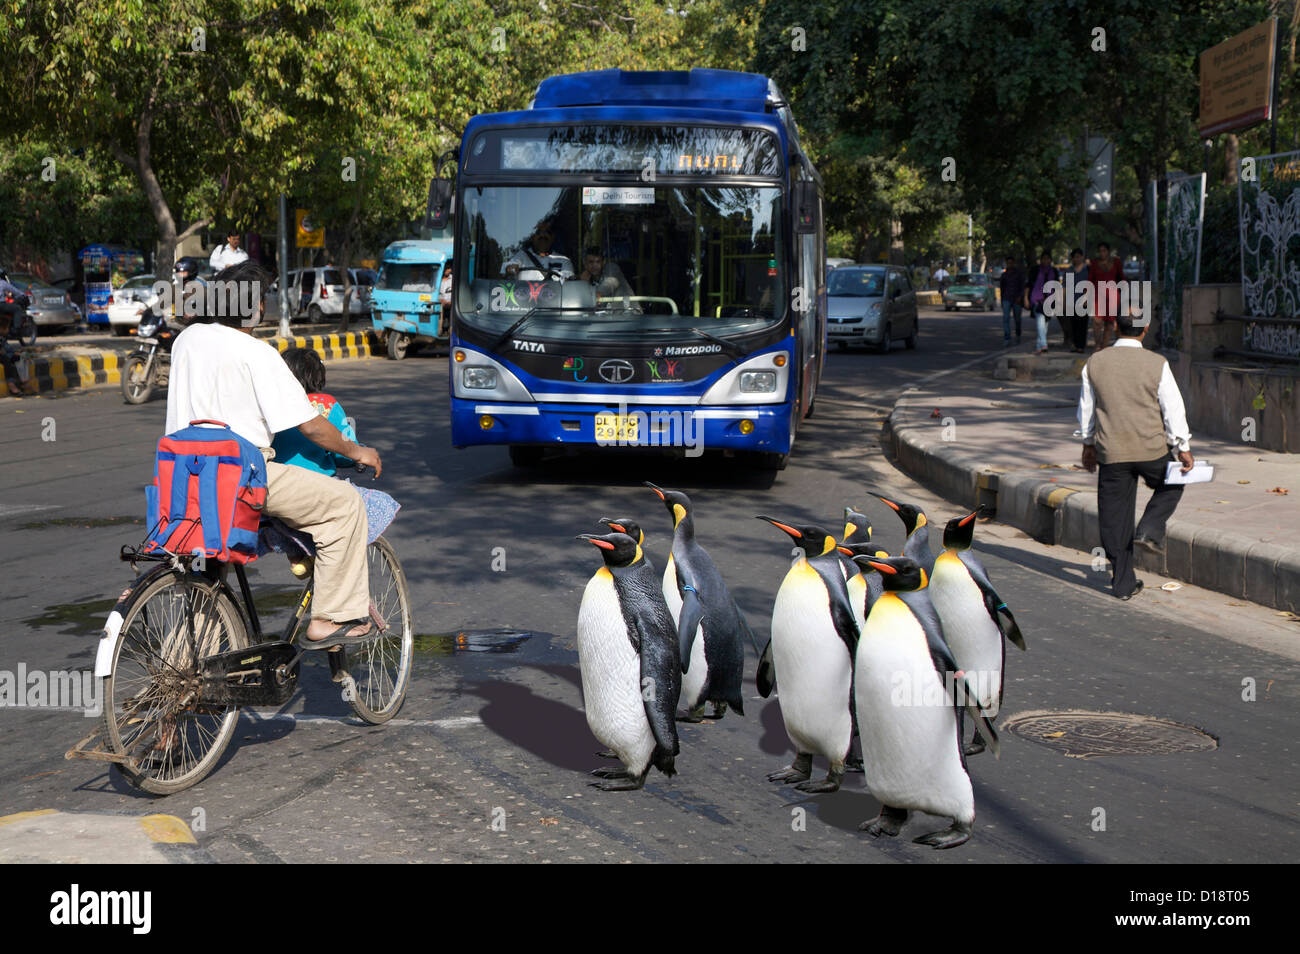 Penguins on tour Stock Photo